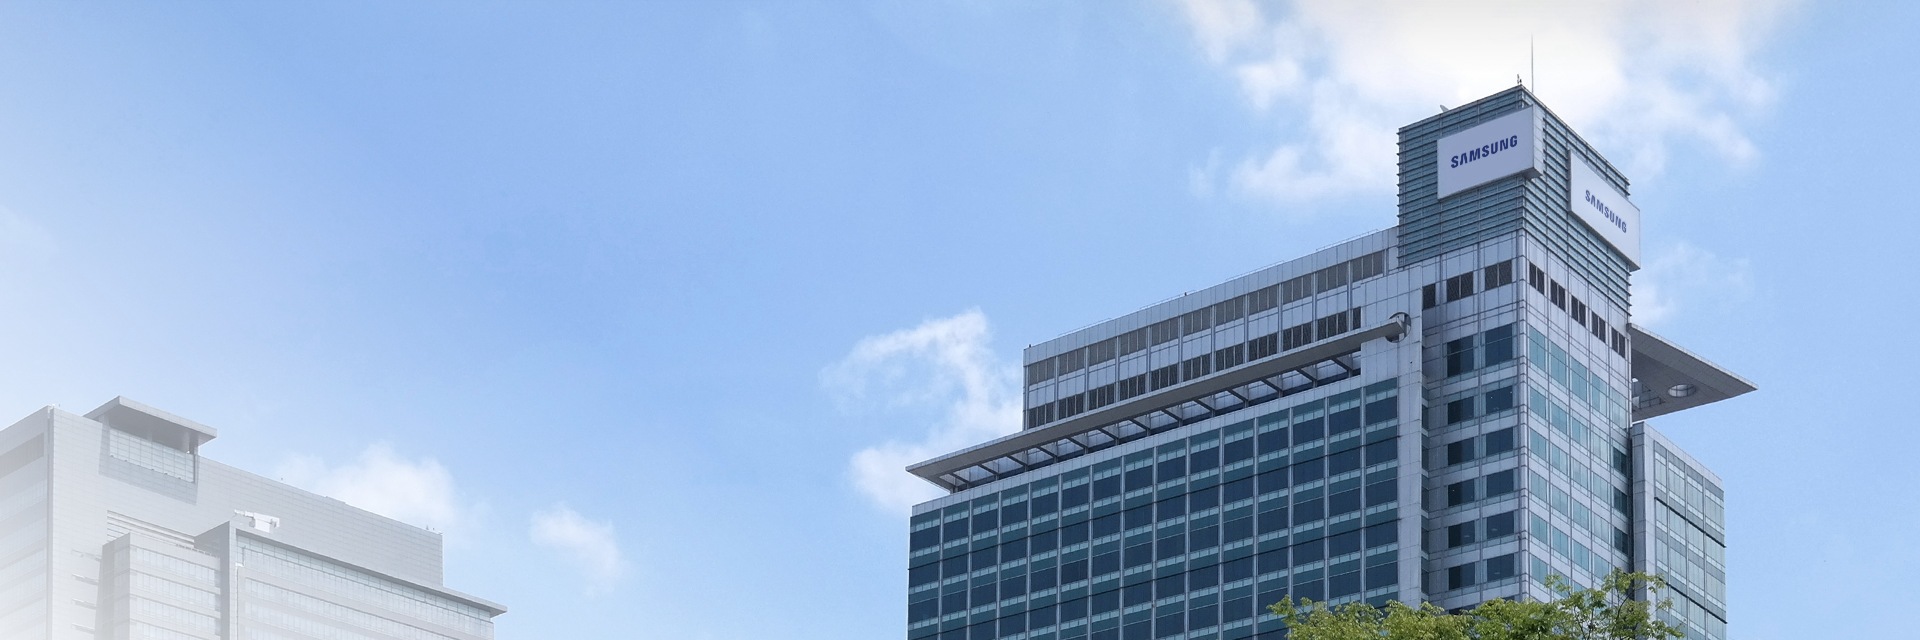 Velká, moderní kancelářská budova společnosti Samsung proti jasně modré obloze.